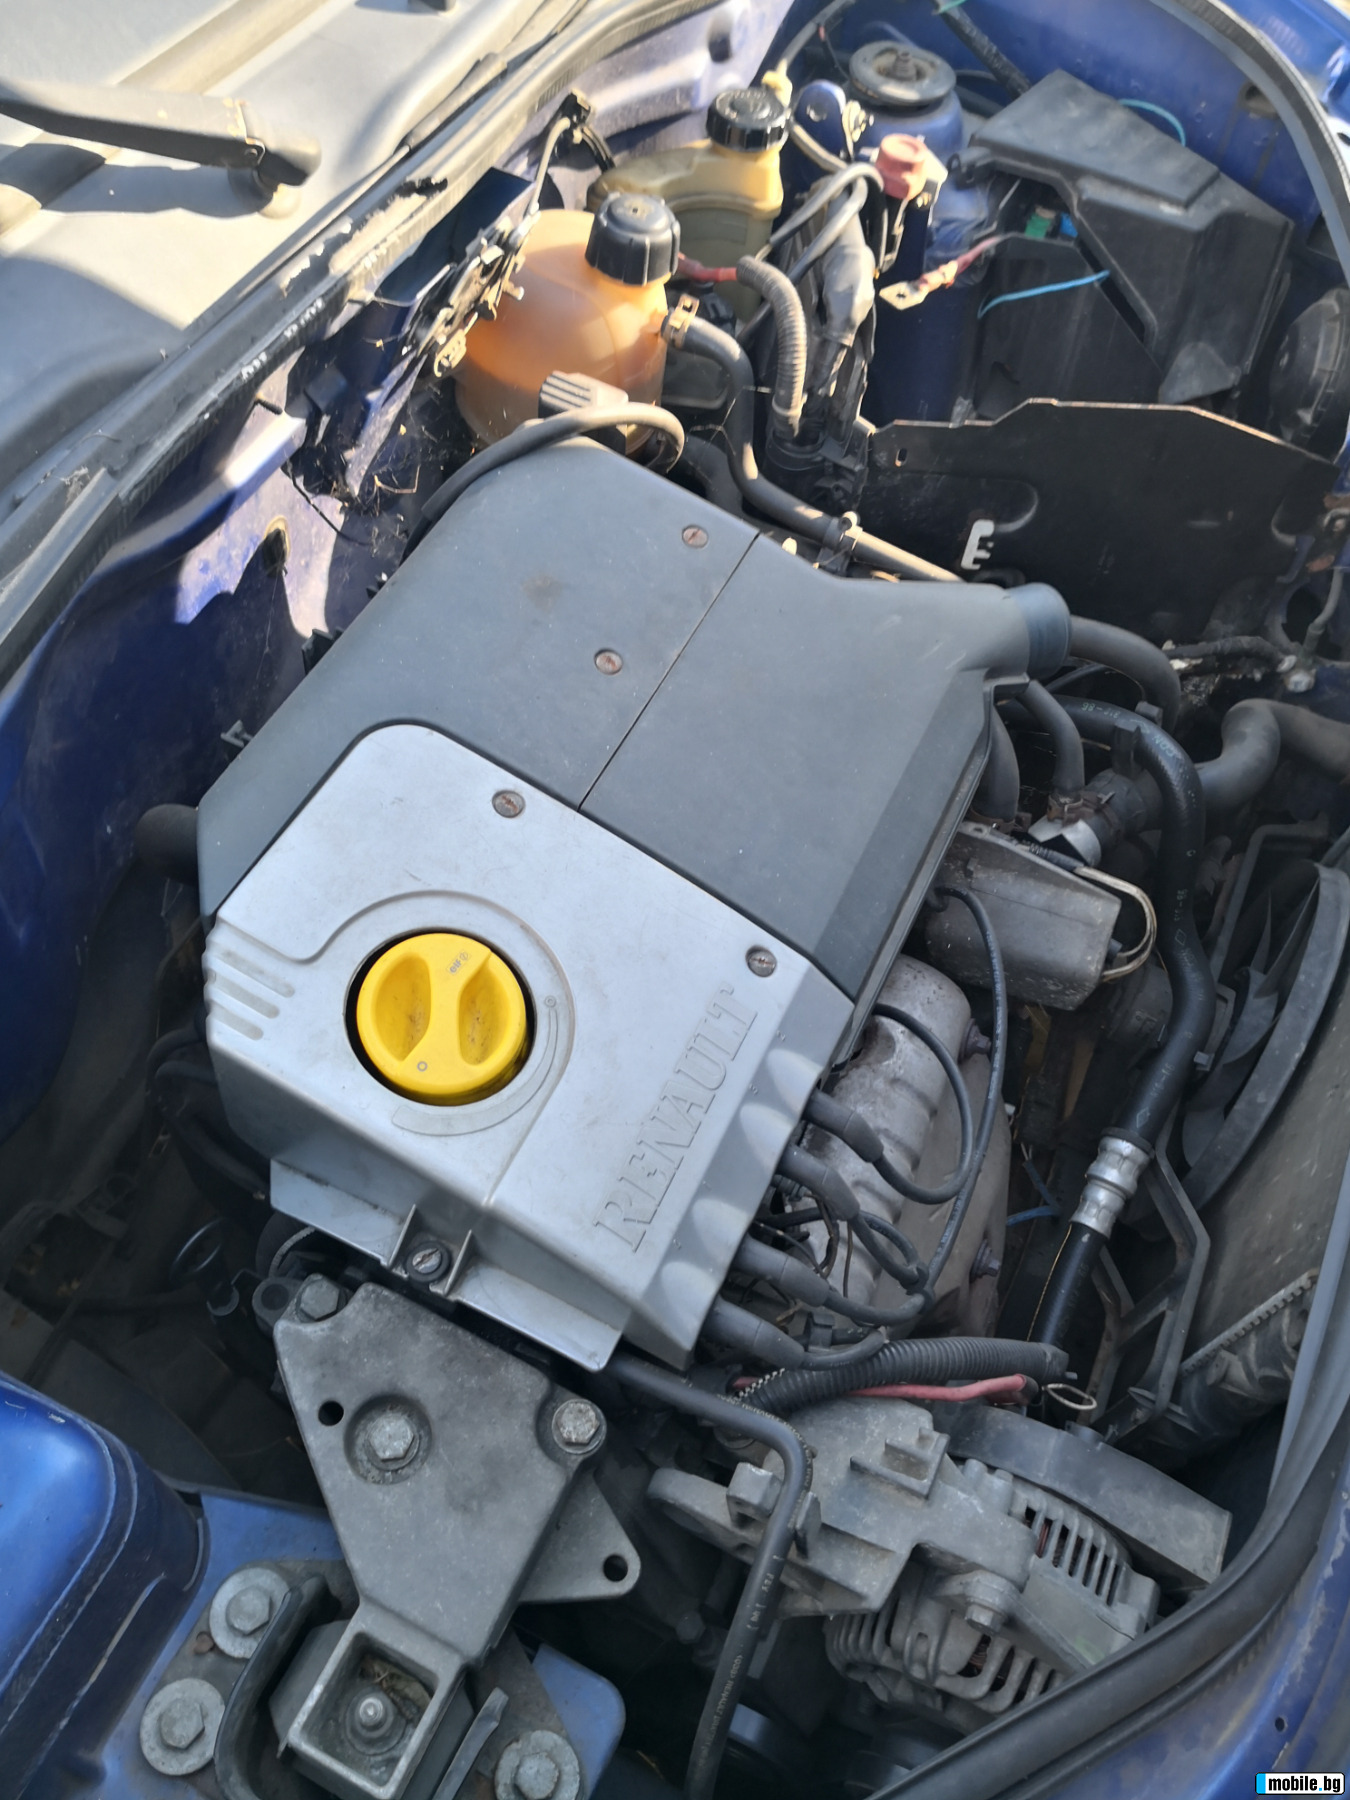 Renault Kangoo 1.2.i1.4i .75ps.3broq | Mobile.bg   2